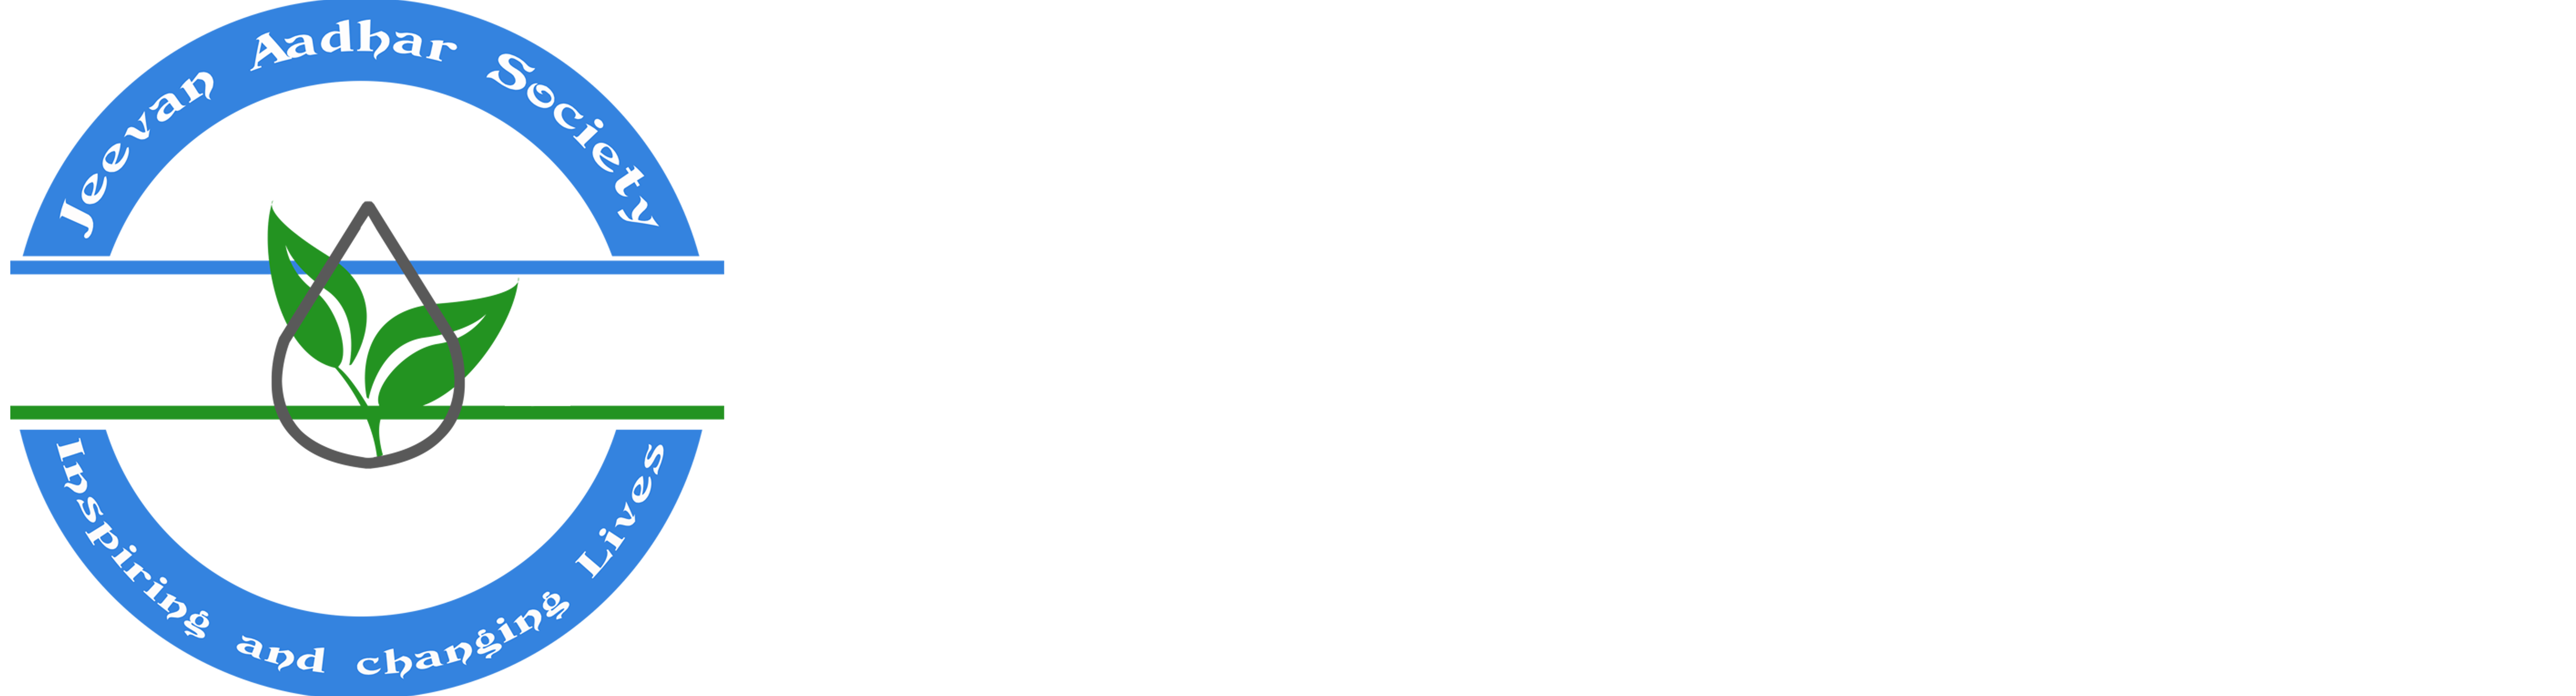 Jeevan Aadhar Society logo